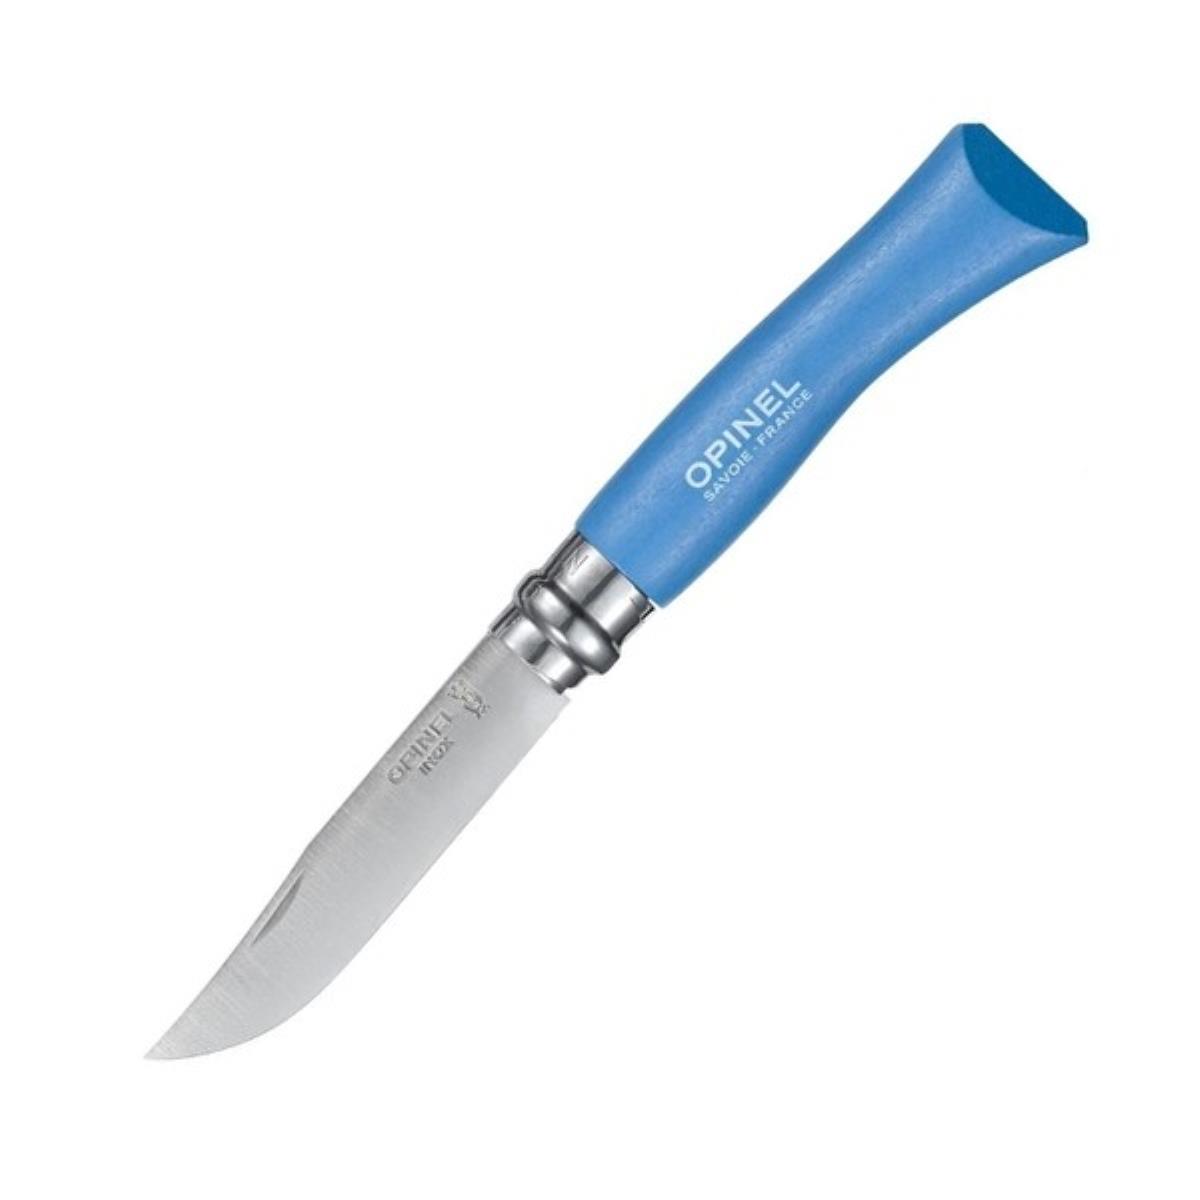 Нож №7 VRI Colored Tradition Sky blue нерж. сталь, рукоять граб, длина клинка8см (голубой) OPINEL нож складной щука литой булат баранова граб